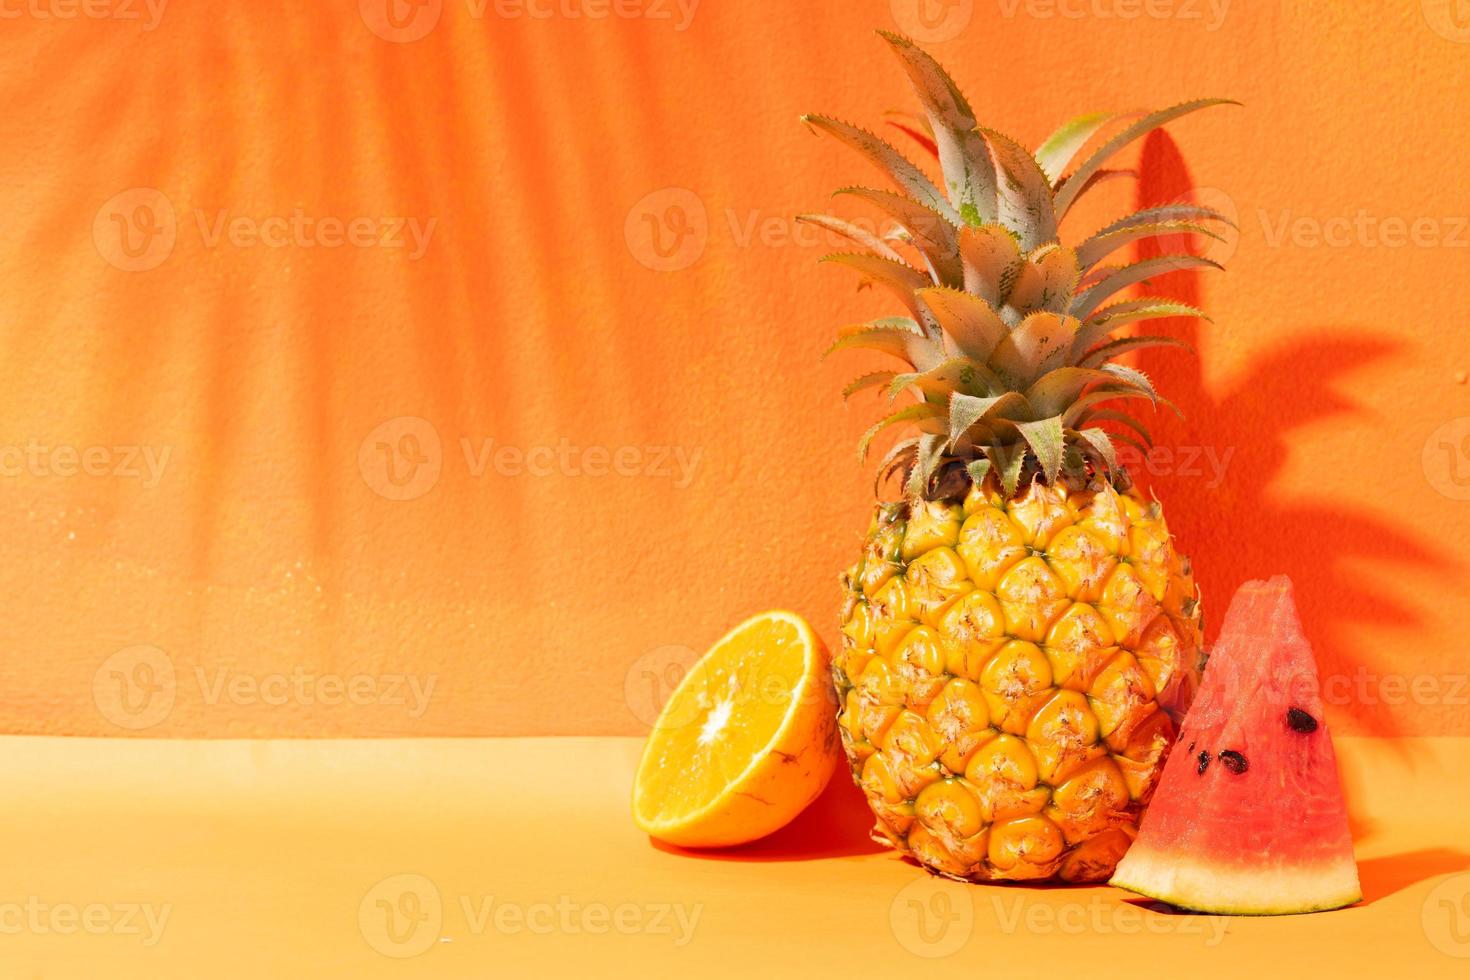 sommar koncept med apelsin, ananas och vattenmelon och orange bakgrund foto